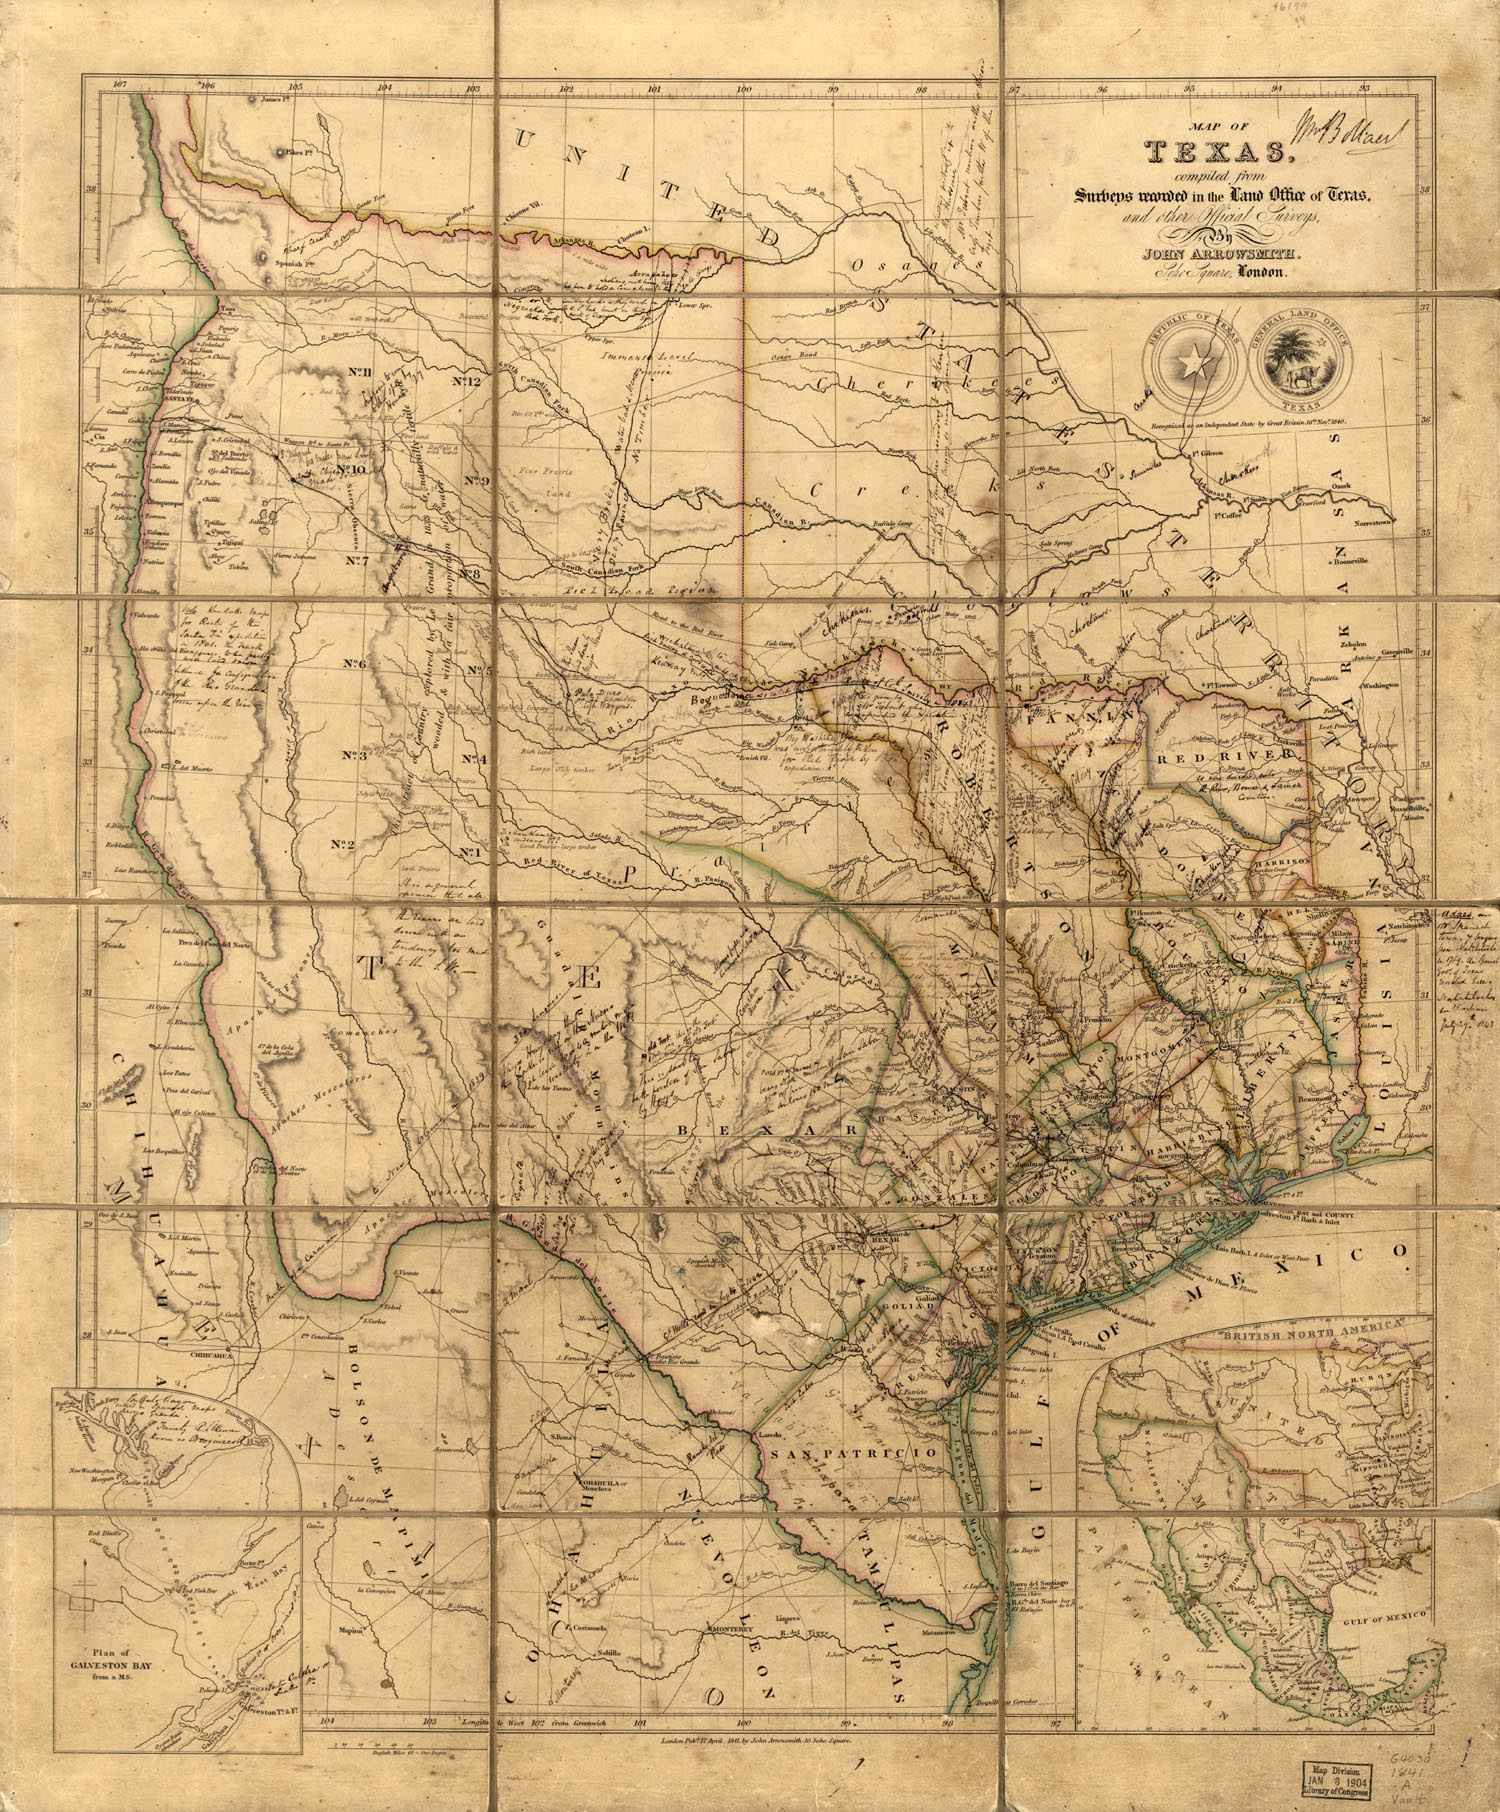 Big Republic of Texas Map